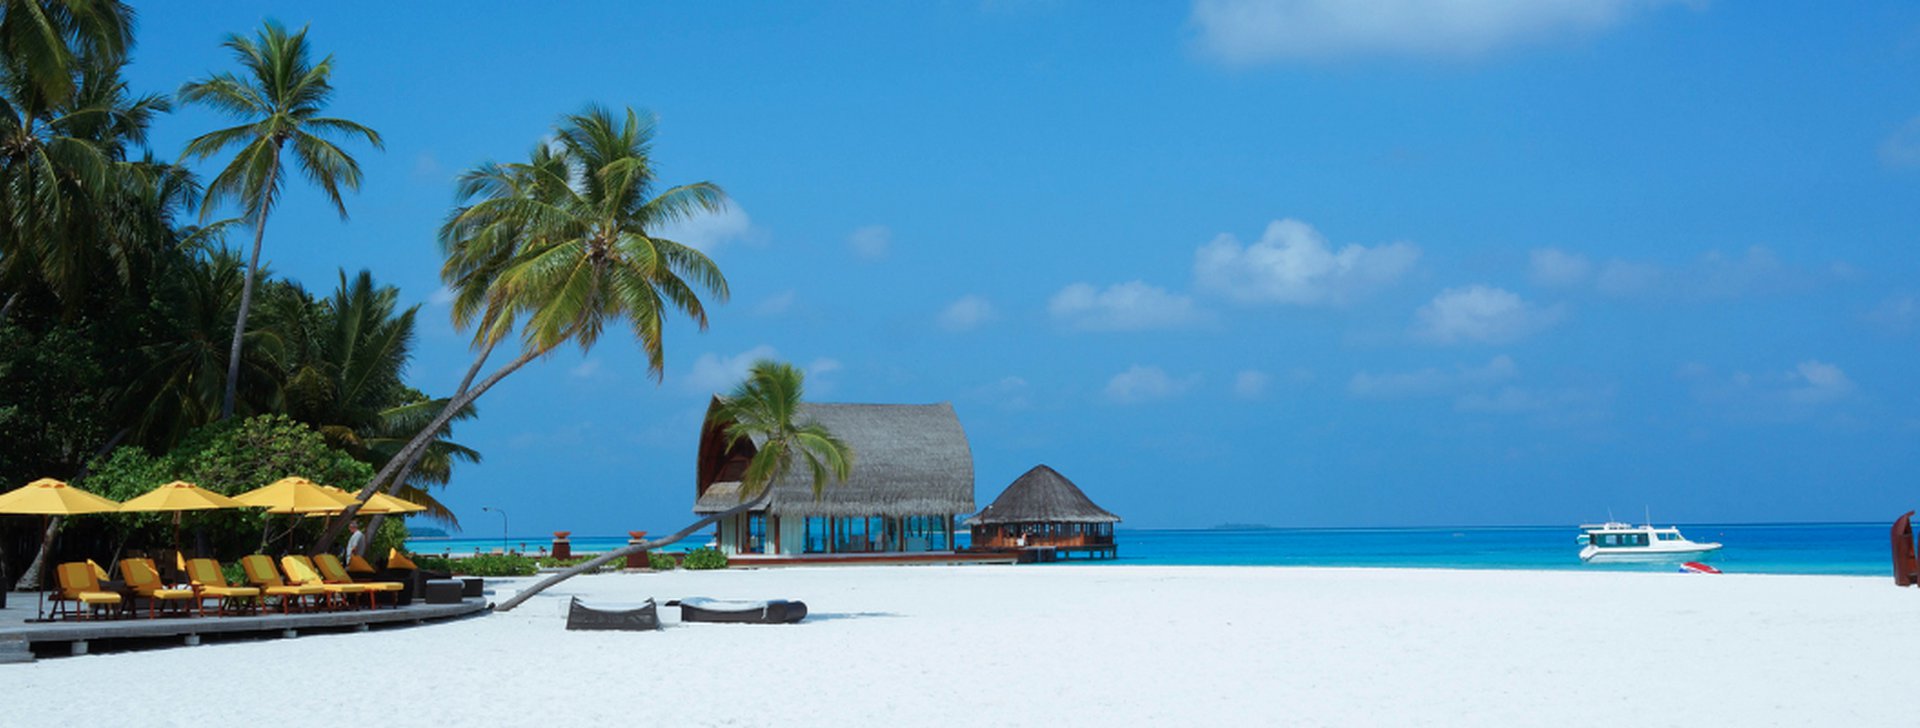 Reiseziele Malediven